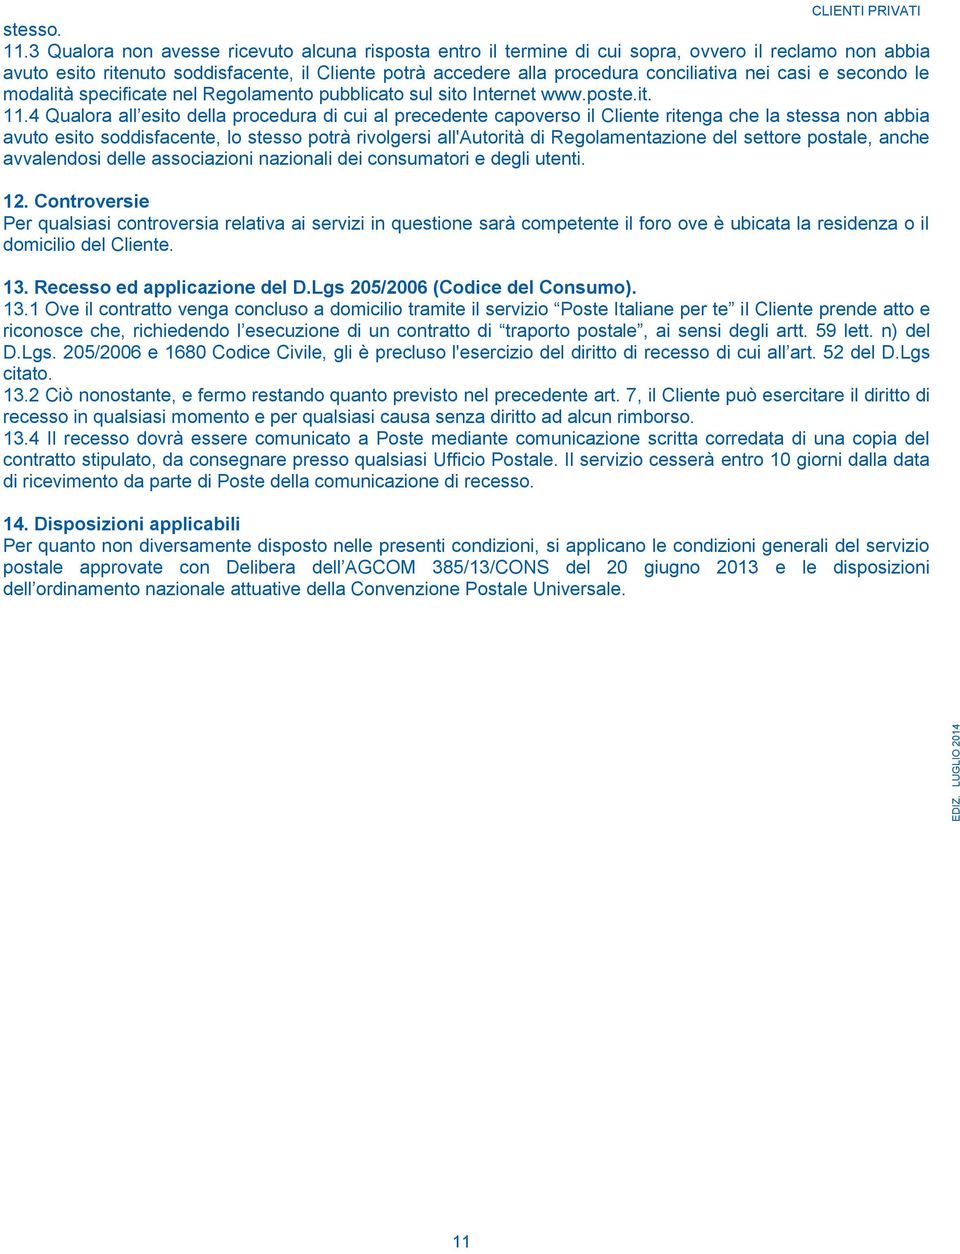 casi e secondo le modalità specificate nel Regolamento pubblicato sul sito Internet www.poste.it. 11.